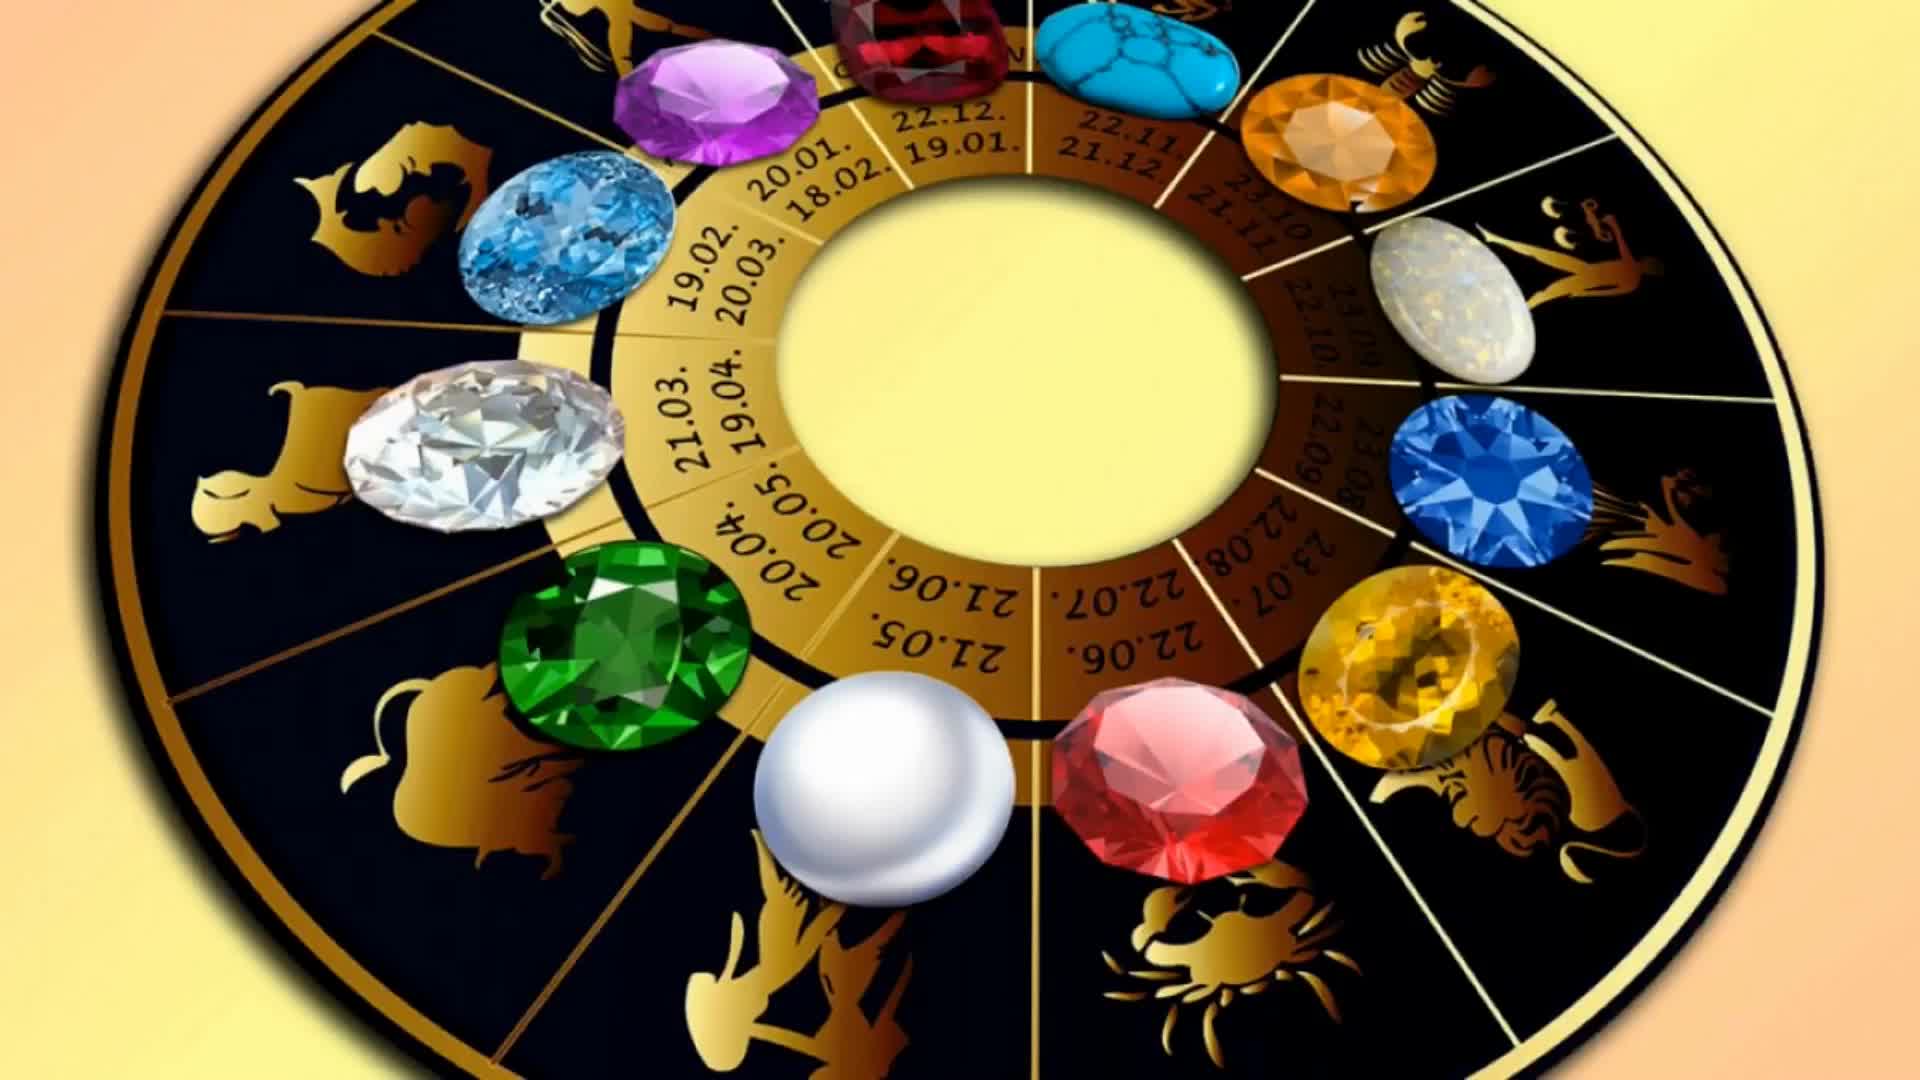 Код богатства по зодиаку. Талисман по знаку зодиака. Астрология. Зодиакальный цикл. Камни и астрология.